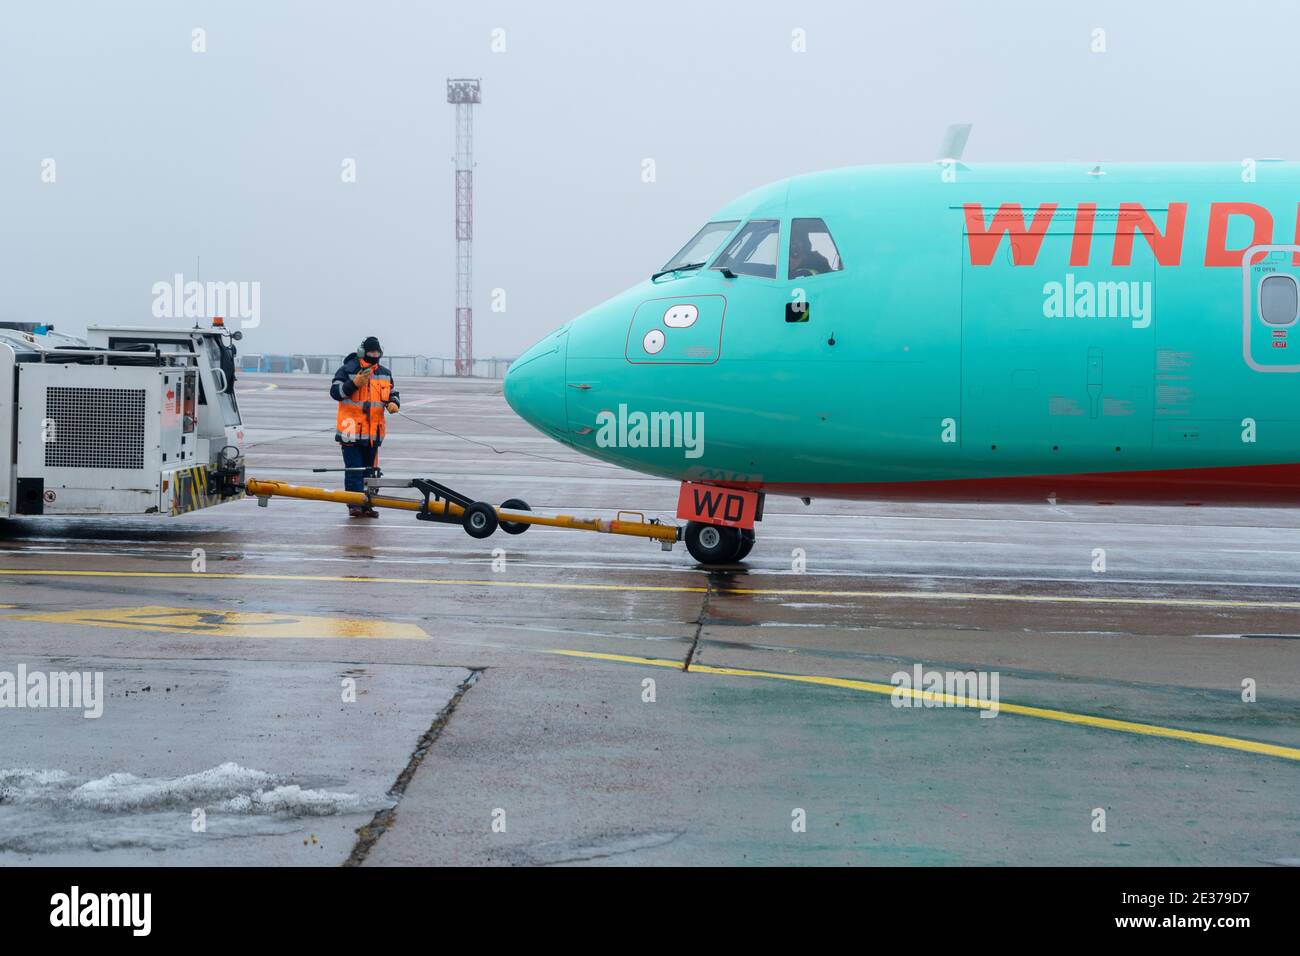 Ukraine, Kiew - 29. Dezember 2020: Das Passagierflugzeug wird auf einer starren Kupplung zum Start geschleppt. Nebliger Flughafen, schlechte Sicht und schlechtes Wetter Stockfoto